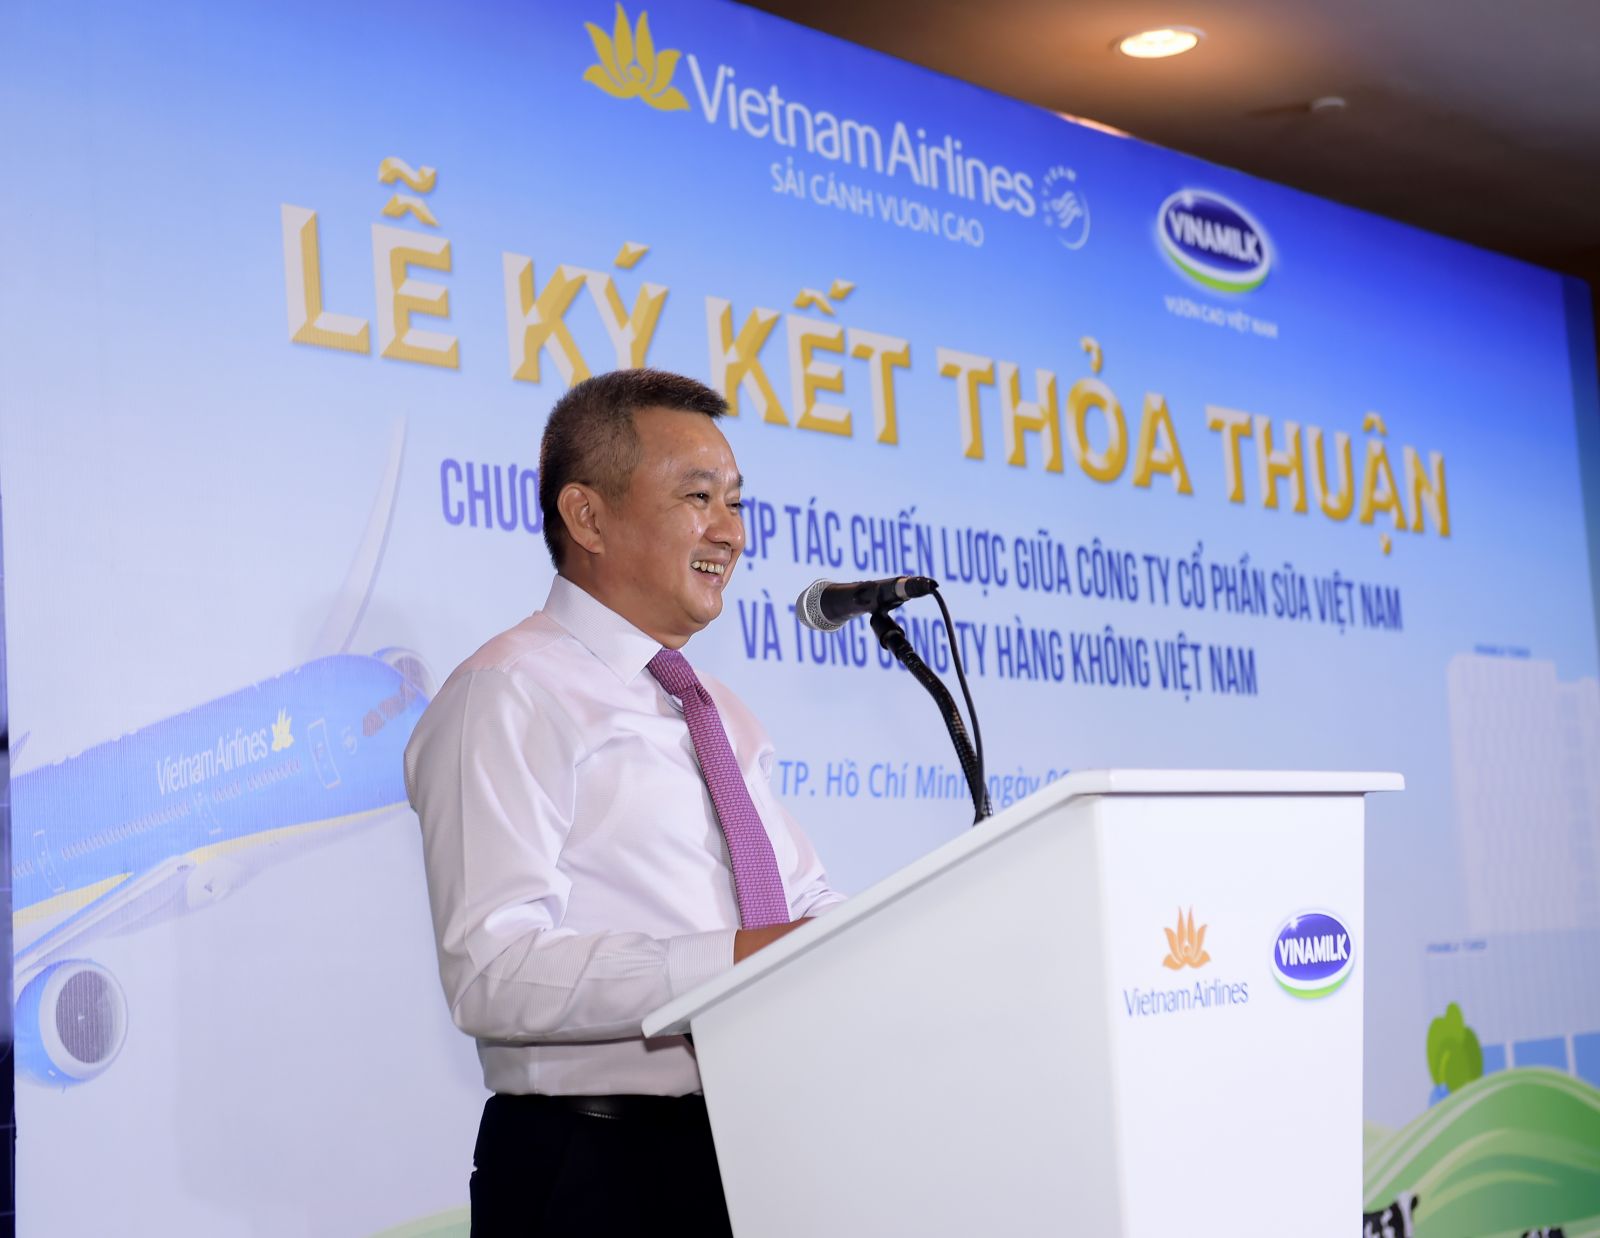 Ông Dương Trí Thành – Thành viên HĐQT, Tổng giám đốc Vietnam Airlines phát biểu tại buổi lễ ký kết (Ảnh: Lý Võ Phú Hưng)